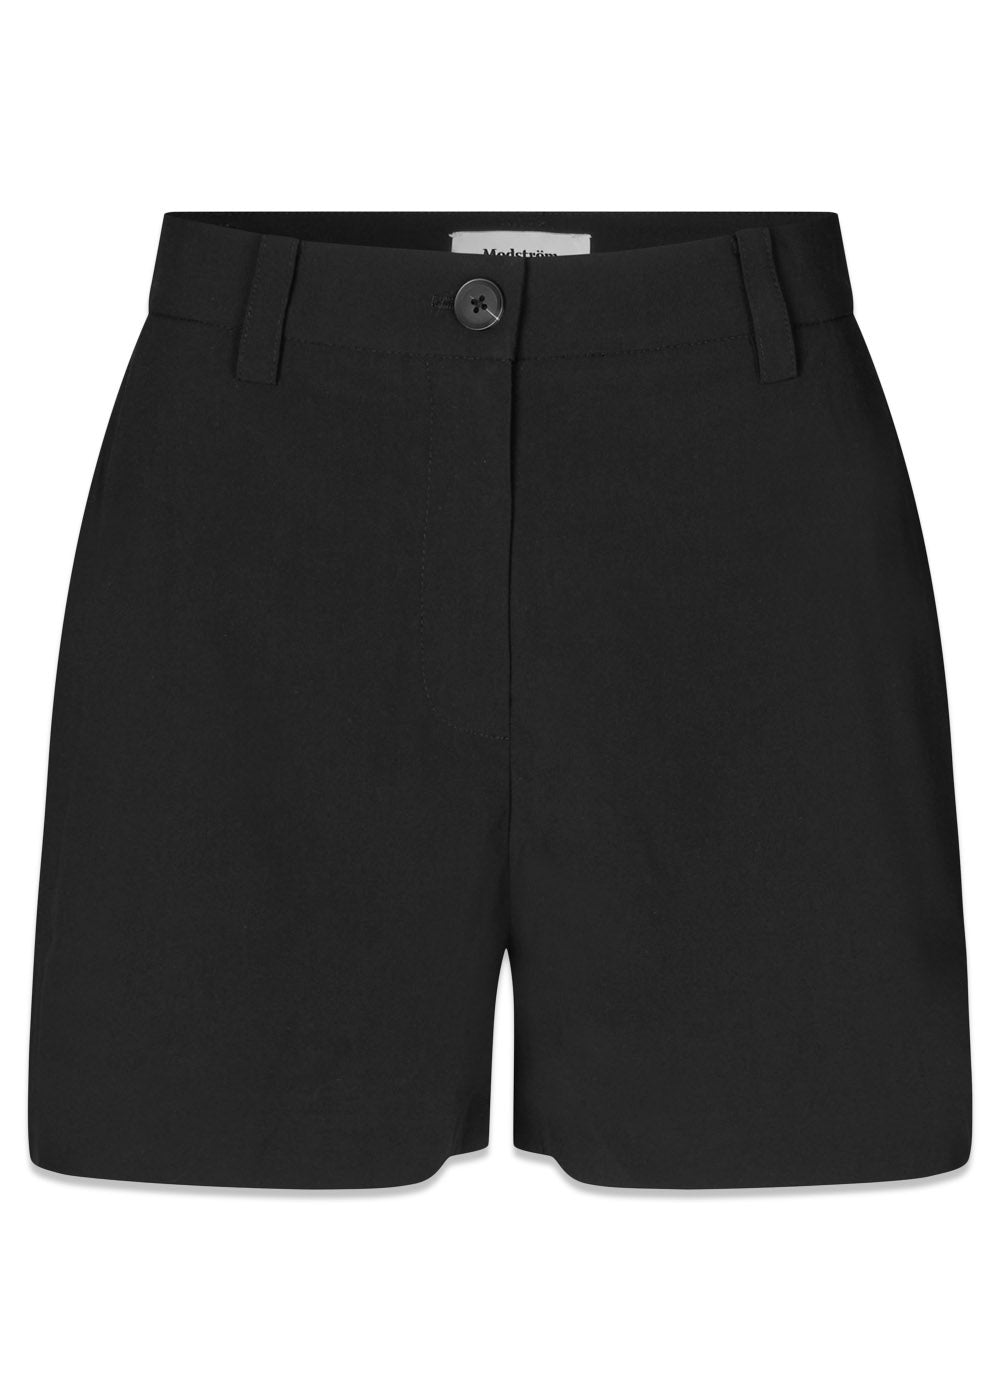 BennyMD shorts - Black